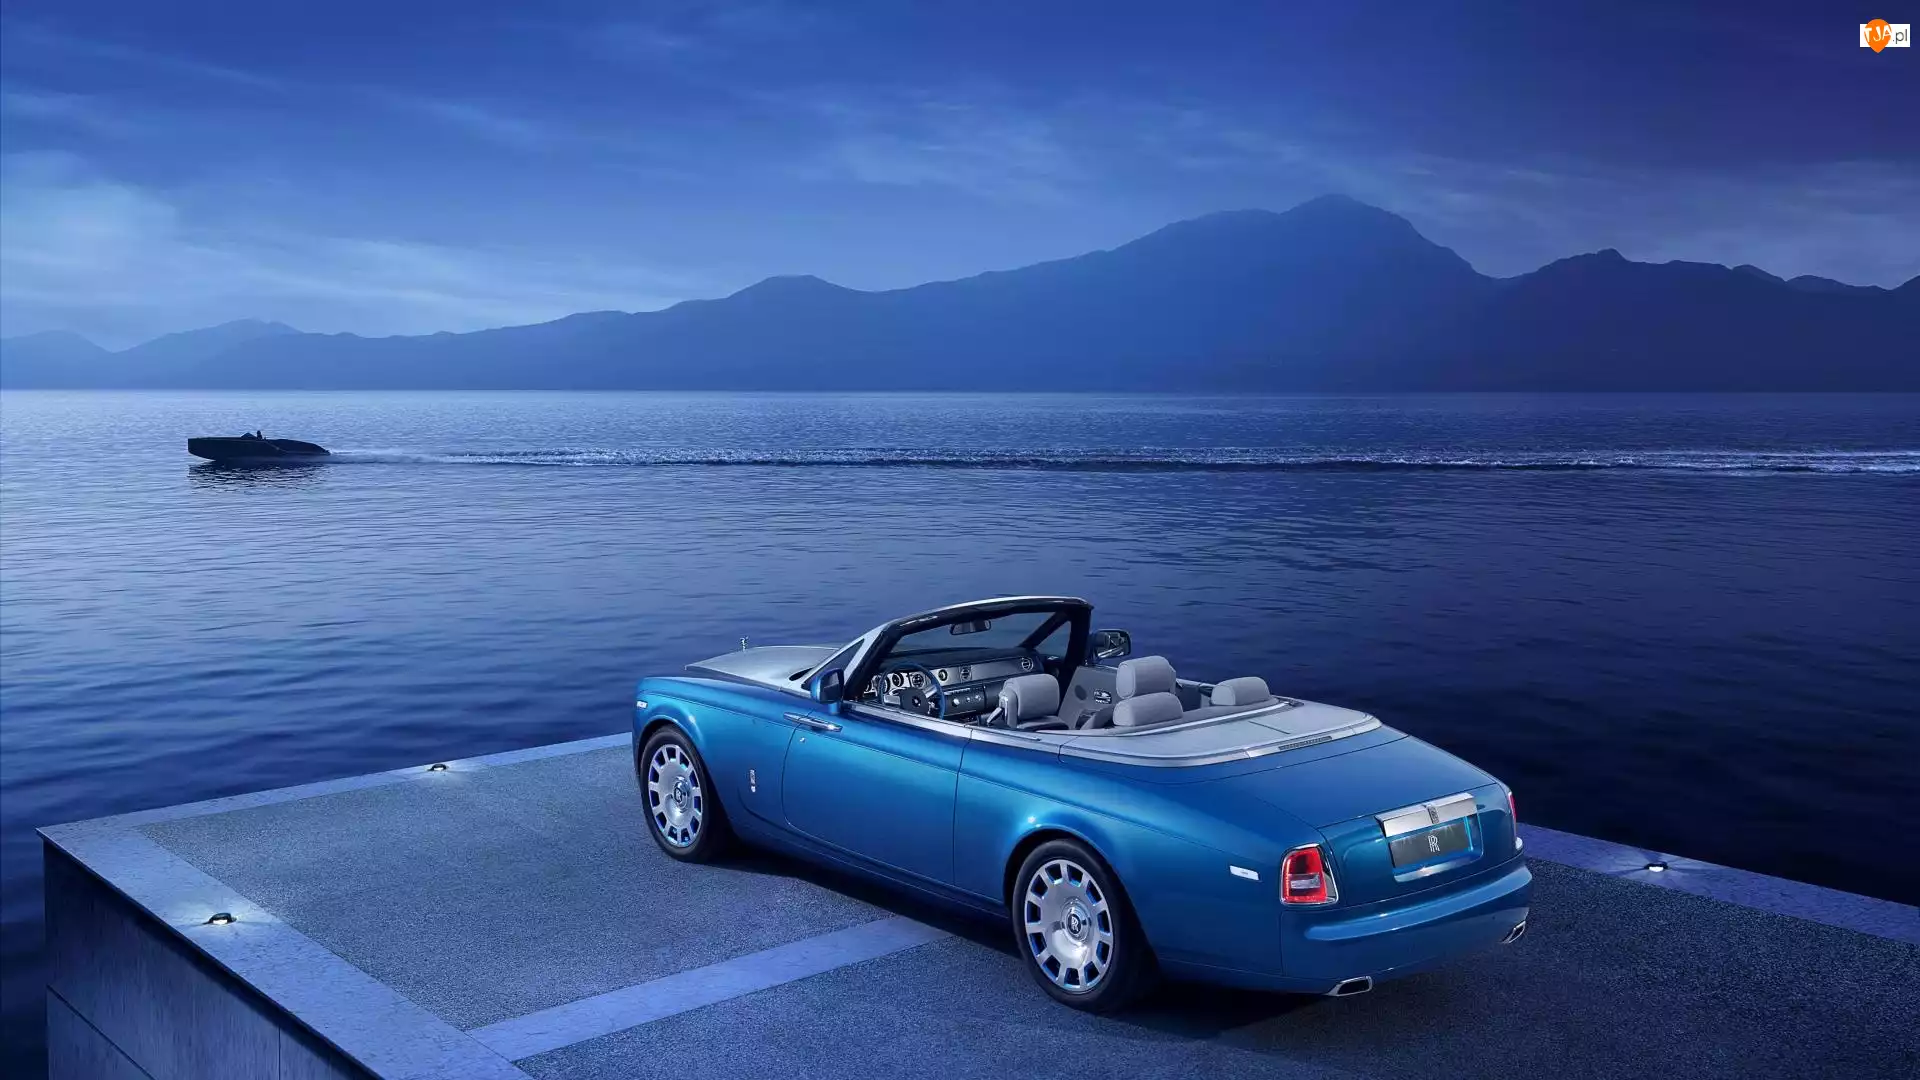 Rolls-Royce, Samochód, Woda, Góry